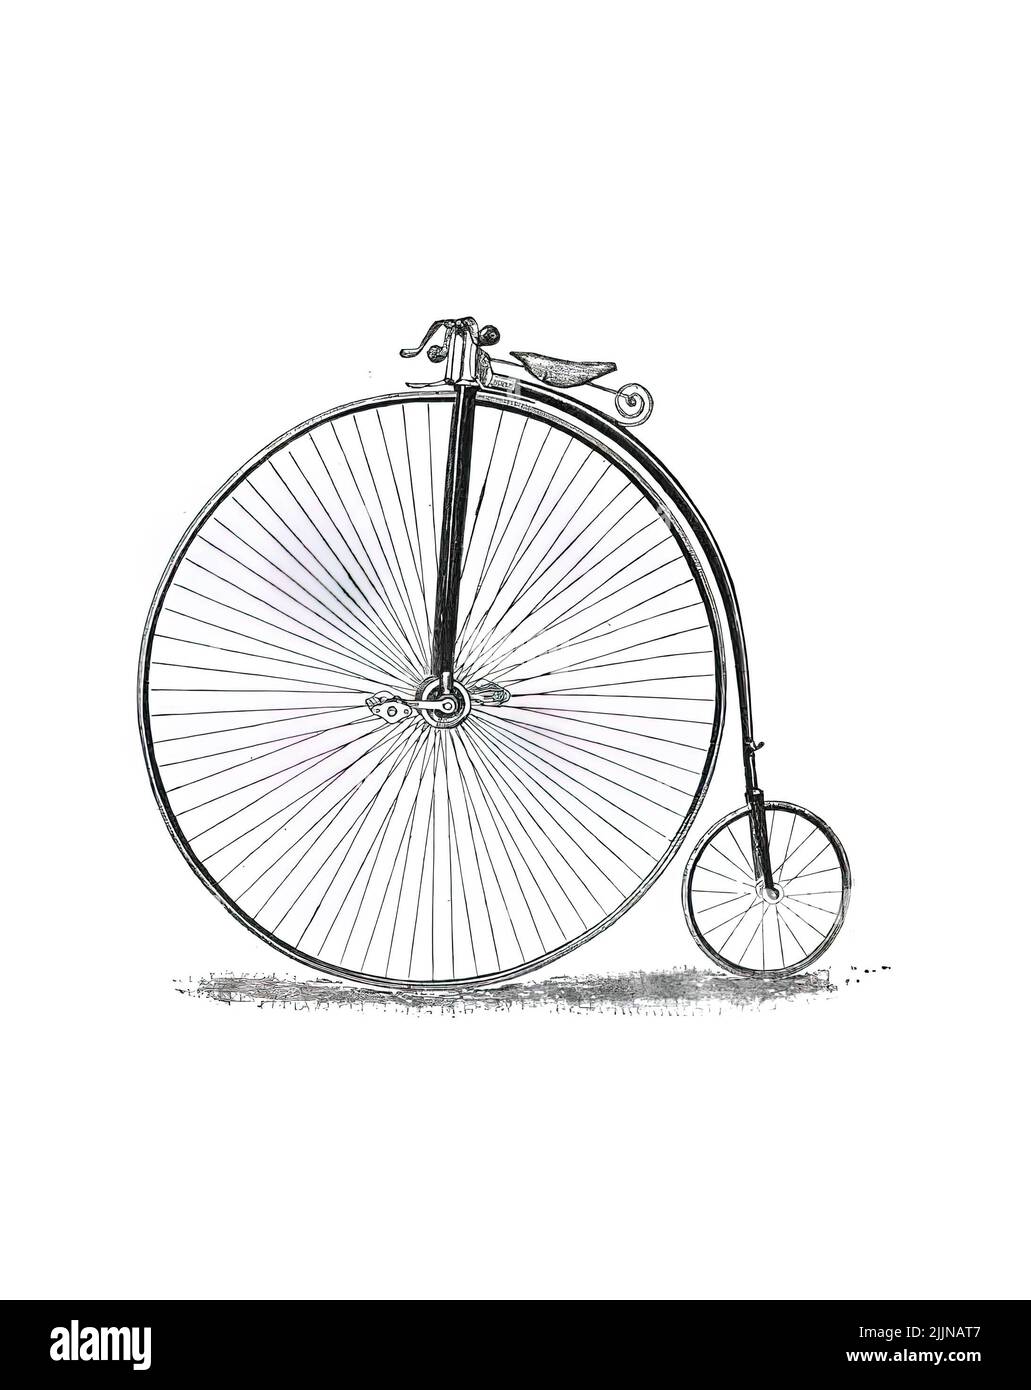 Una Foto De Una Bicicleta De época Del Siglo 19th Dibujada En El Antiguo Catálogo Fotografía De